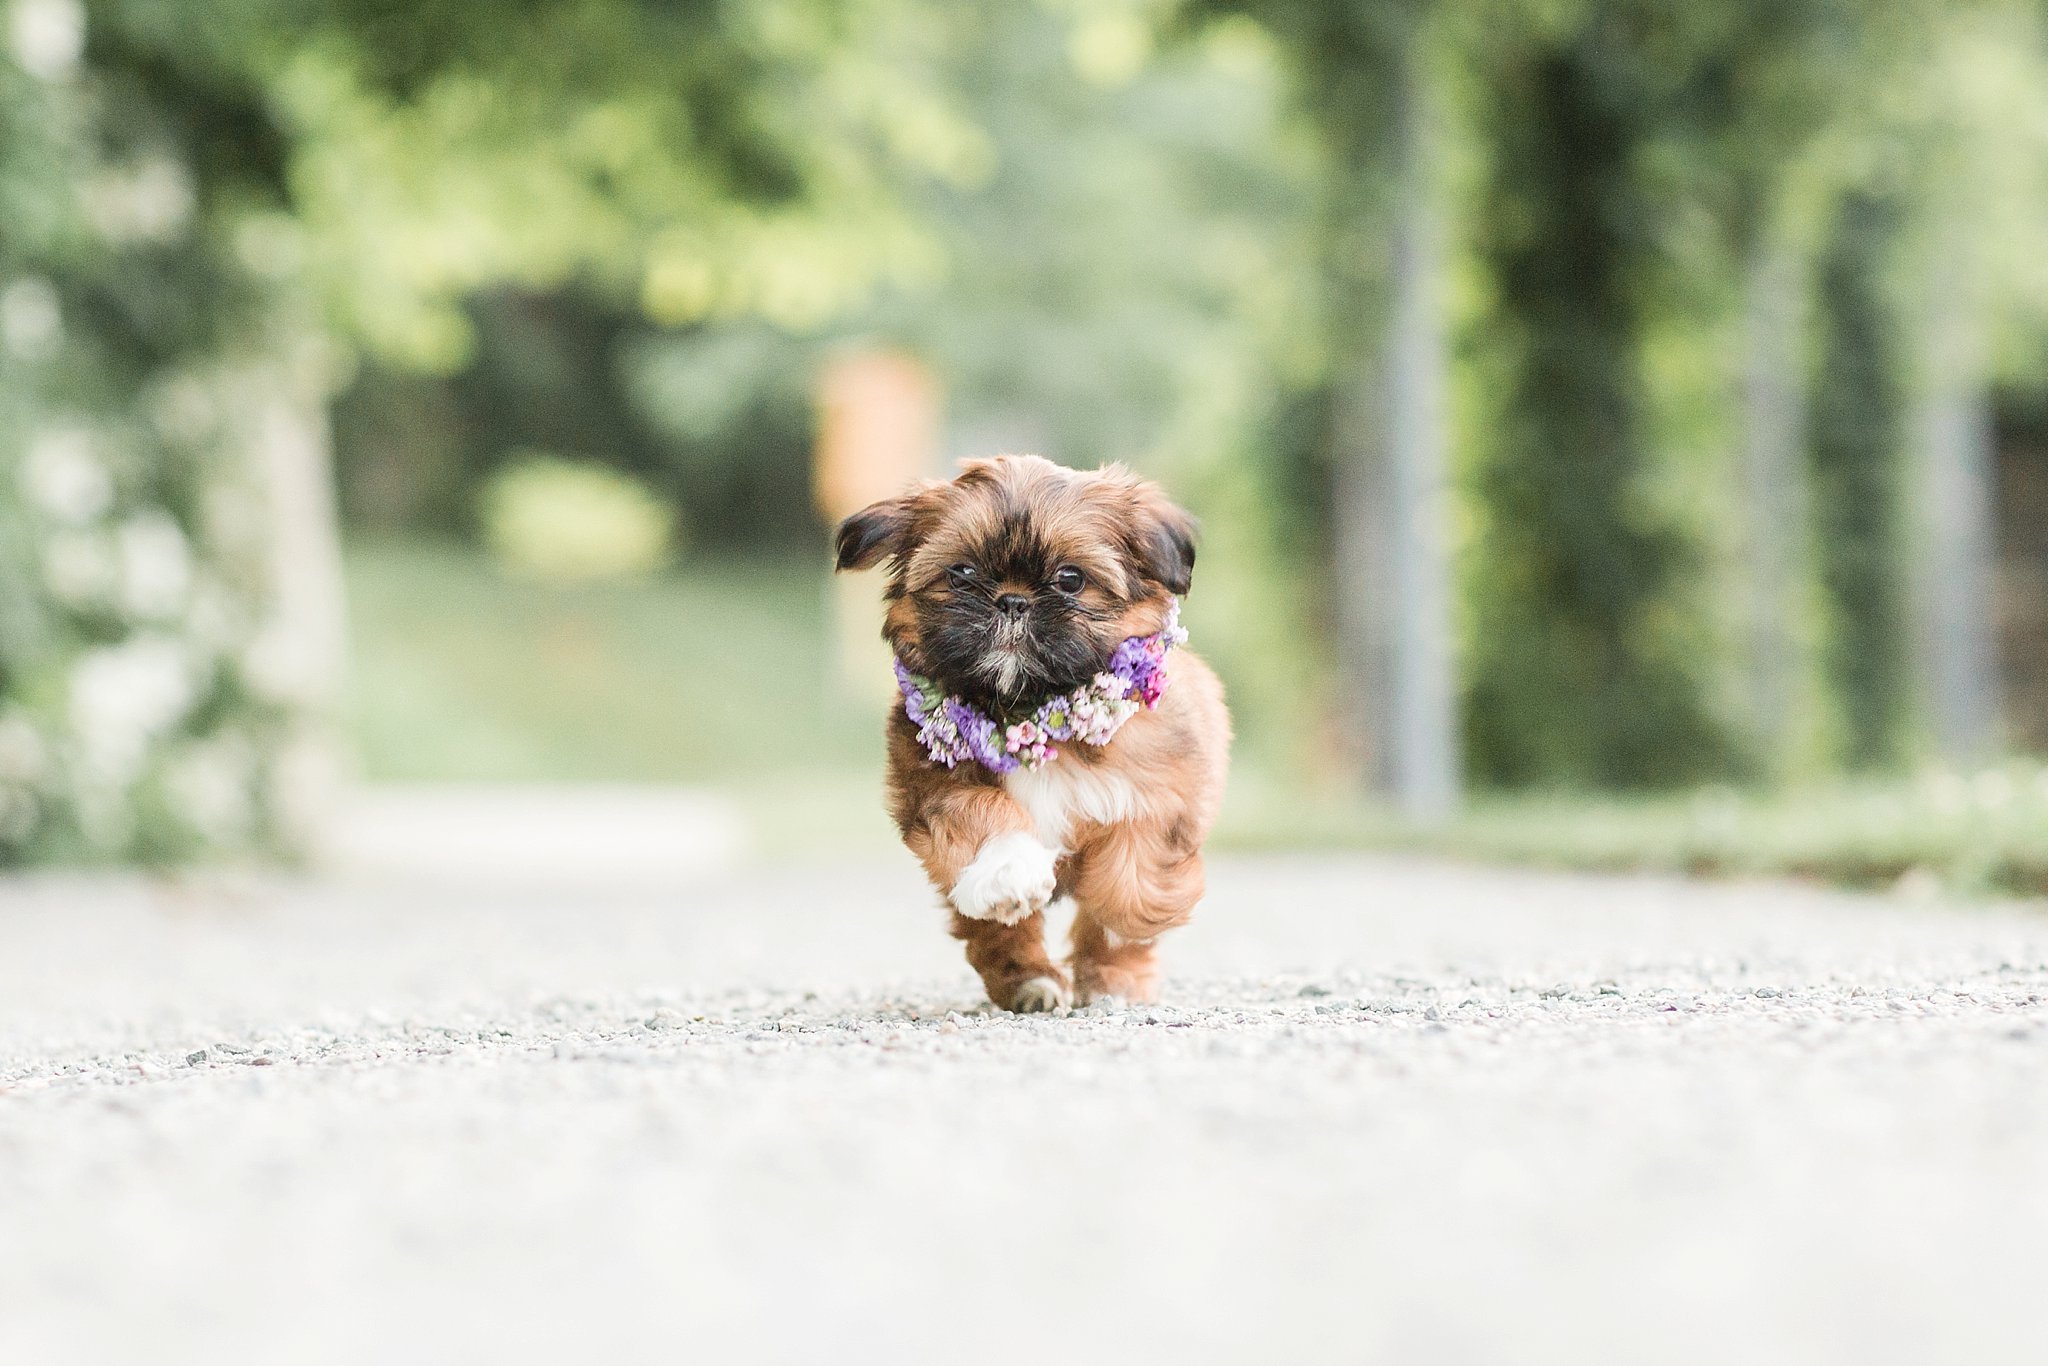 shitzu puppy wearing a floral crown running